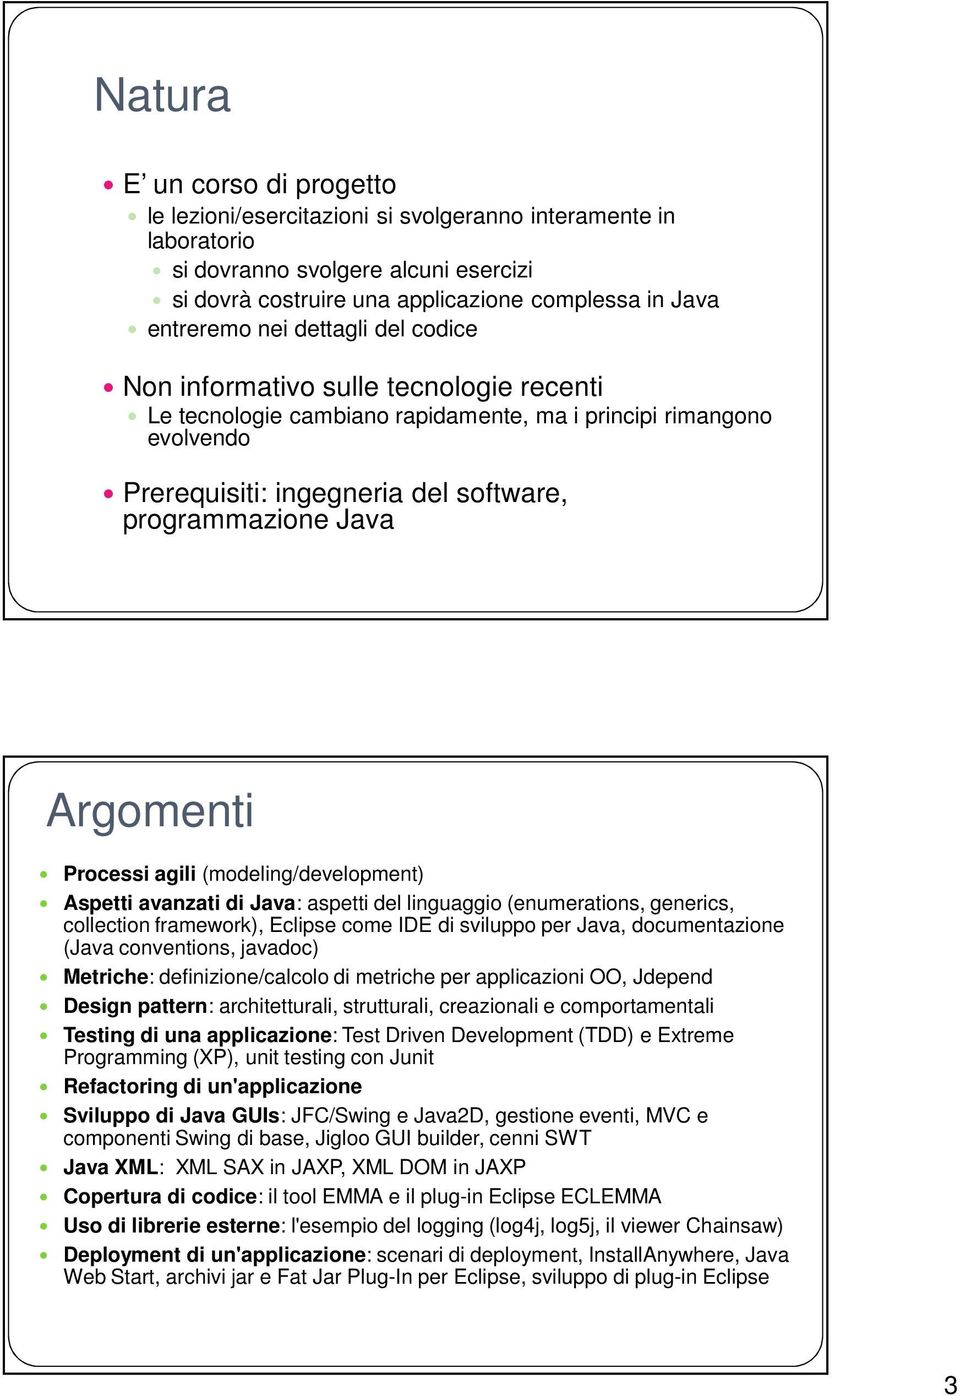 Argomenti Processi agili (modeling/development) Aspetti avanzati di Java: aspetti del linguaggio (enumerations, generics, collection framework), Eclipse come IDE di sviluppo per Java, documentazione